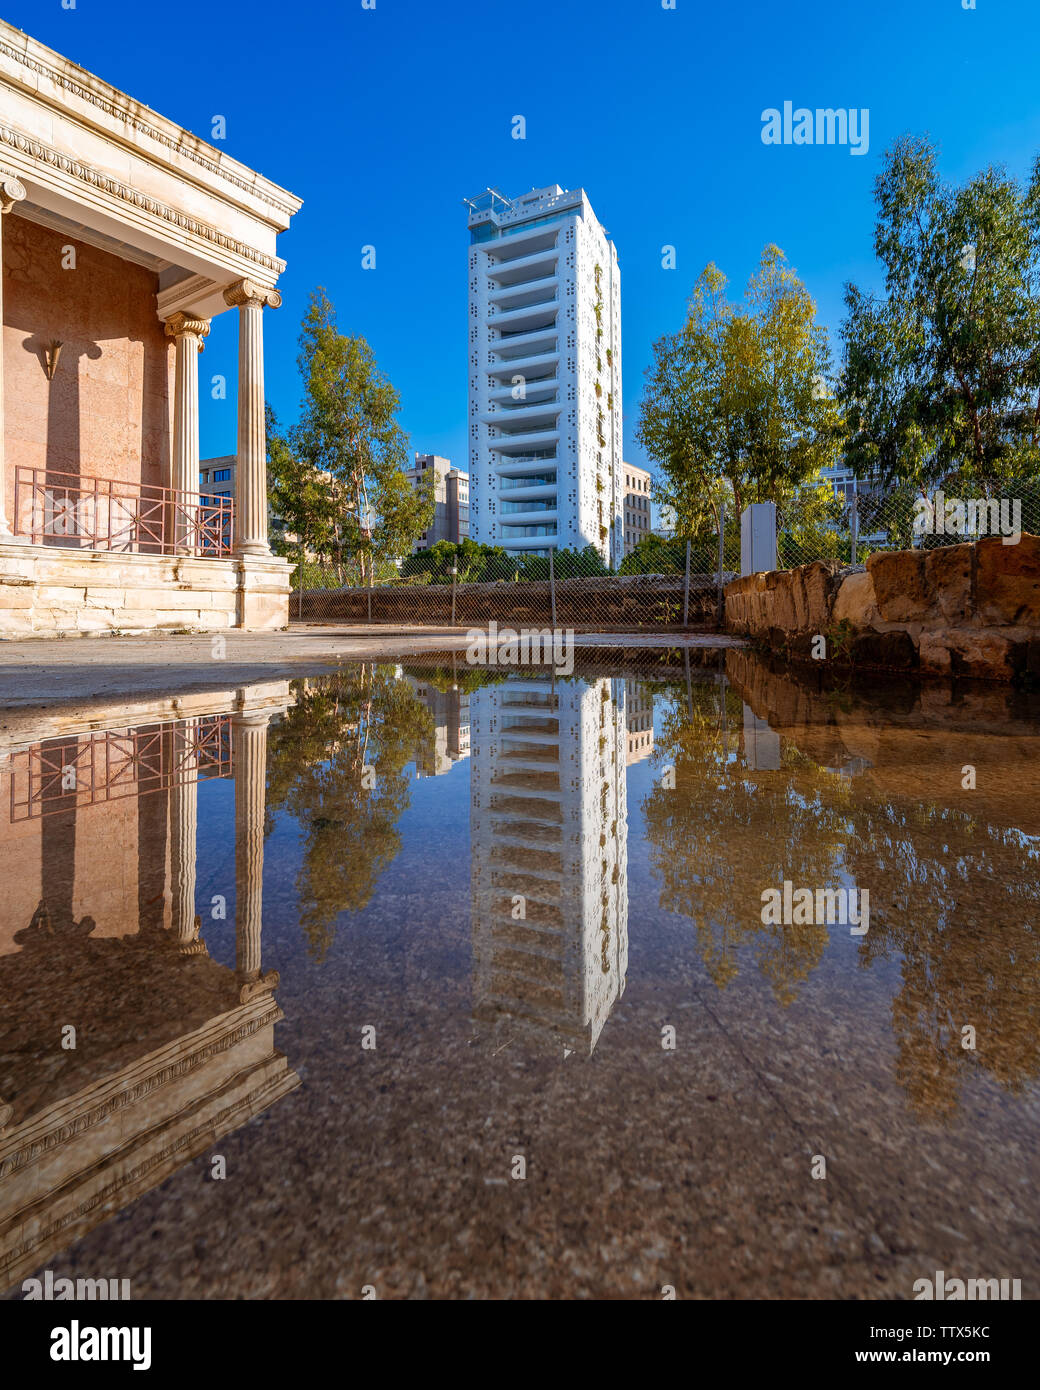 Moderne und alte Architektur in Nikosia, der Hauptstadt Zyperns Stockfoto